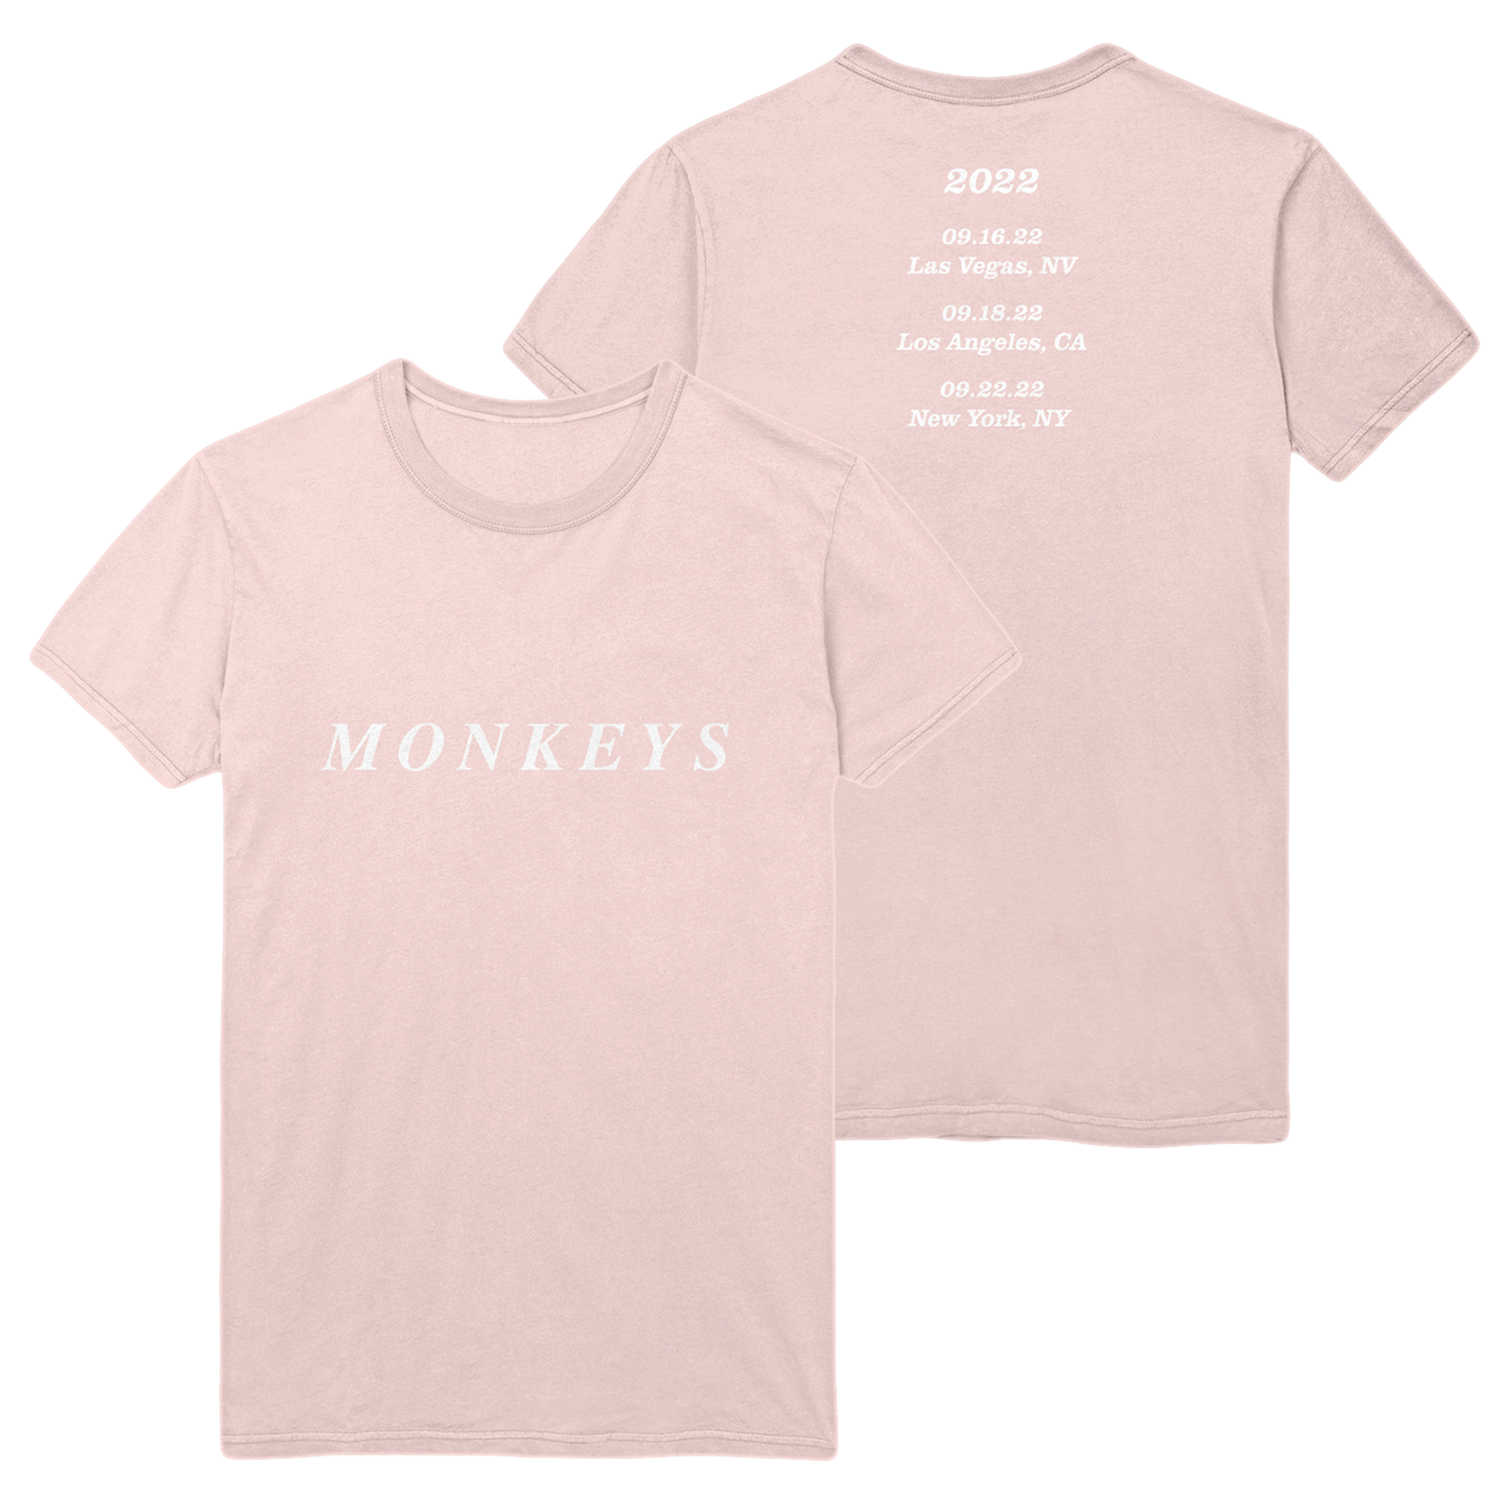 Monkeys Summer 2022 T-Shirt